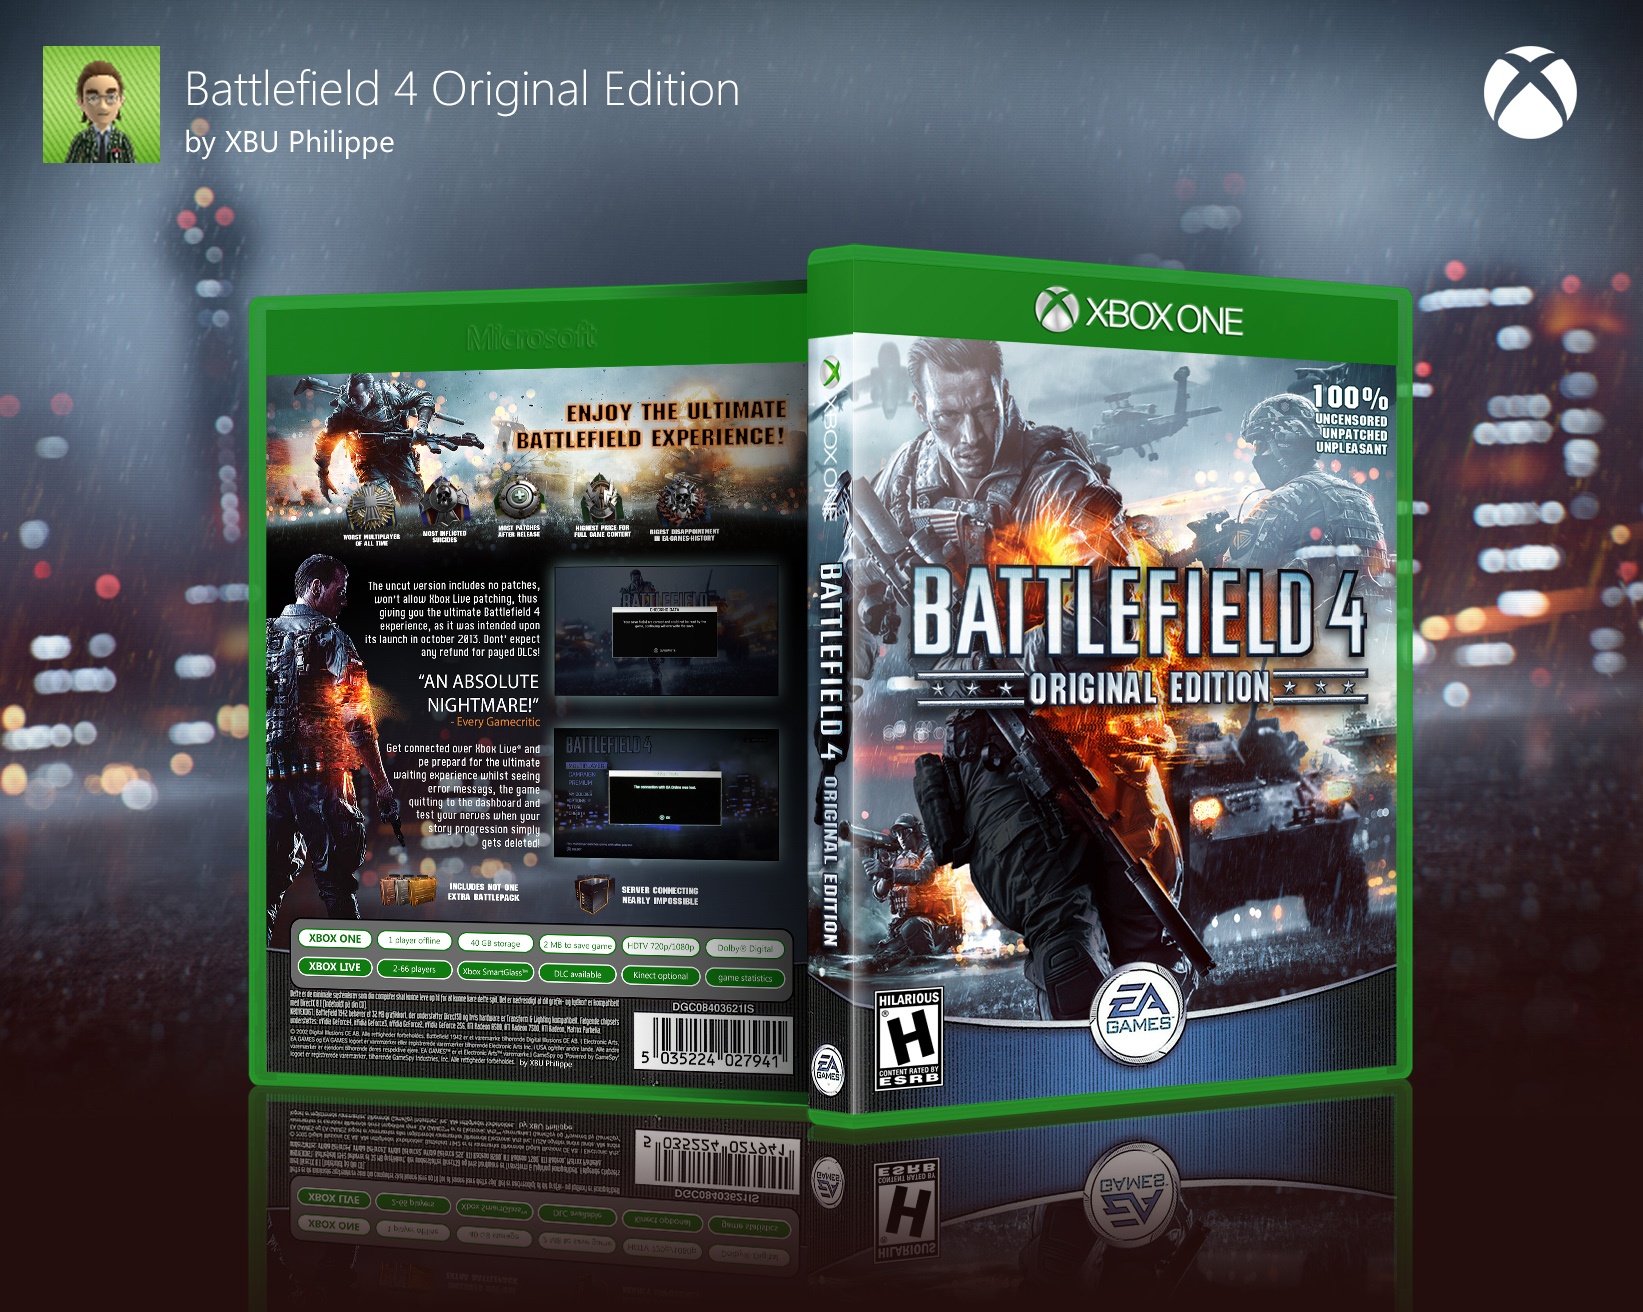 Battlefield 4 - Original Edition box cover